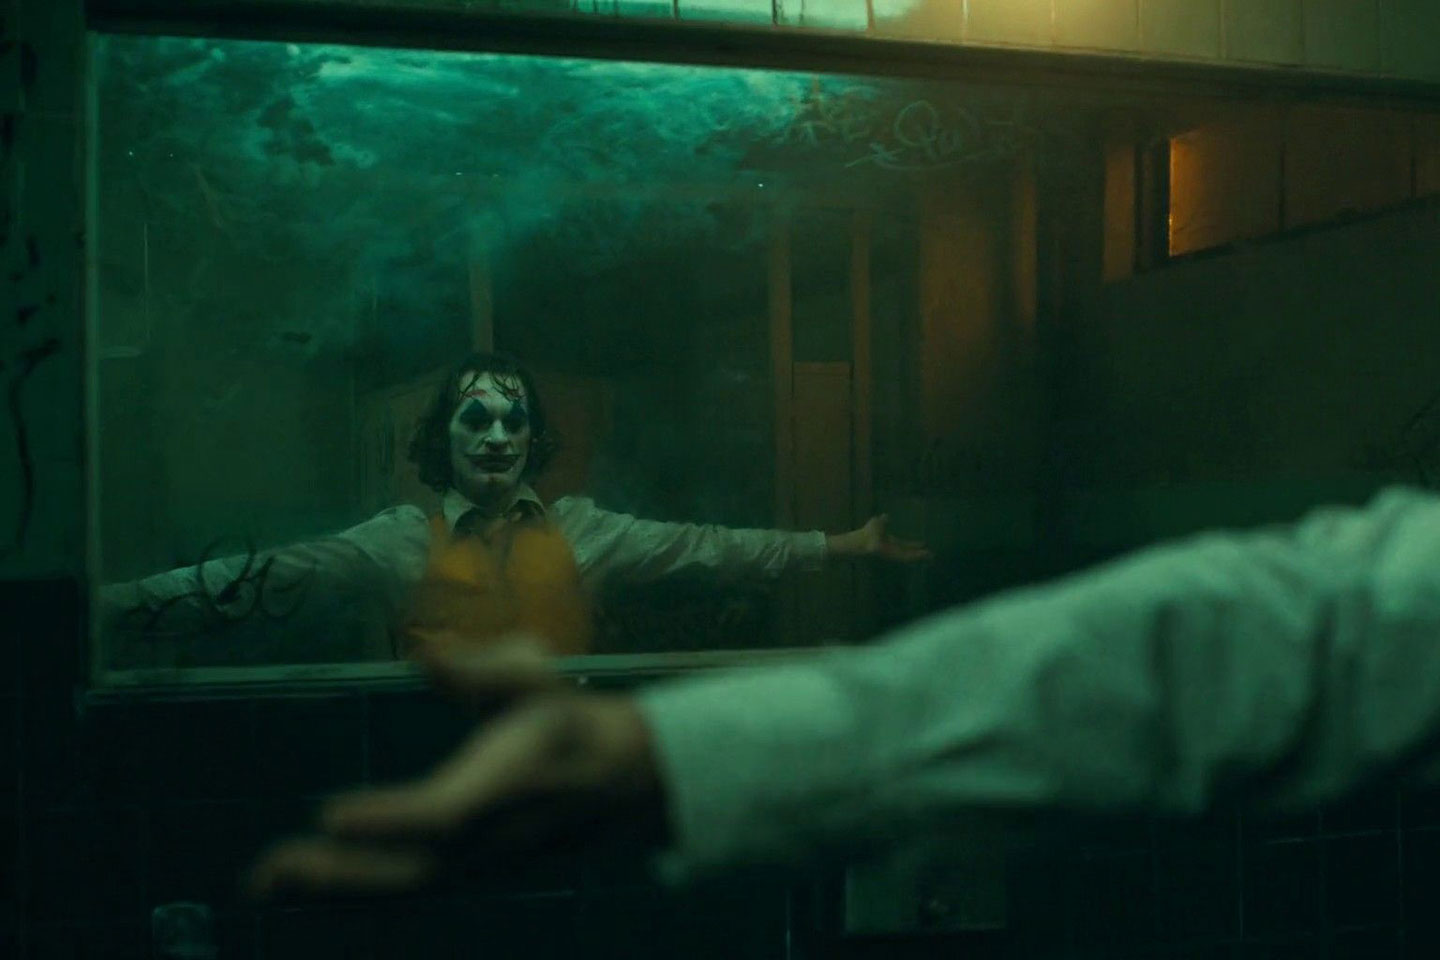 Joaquin Phoenix looks in mirror in the bathroom dance scene of Todd Phillips’ 2019 film Joker